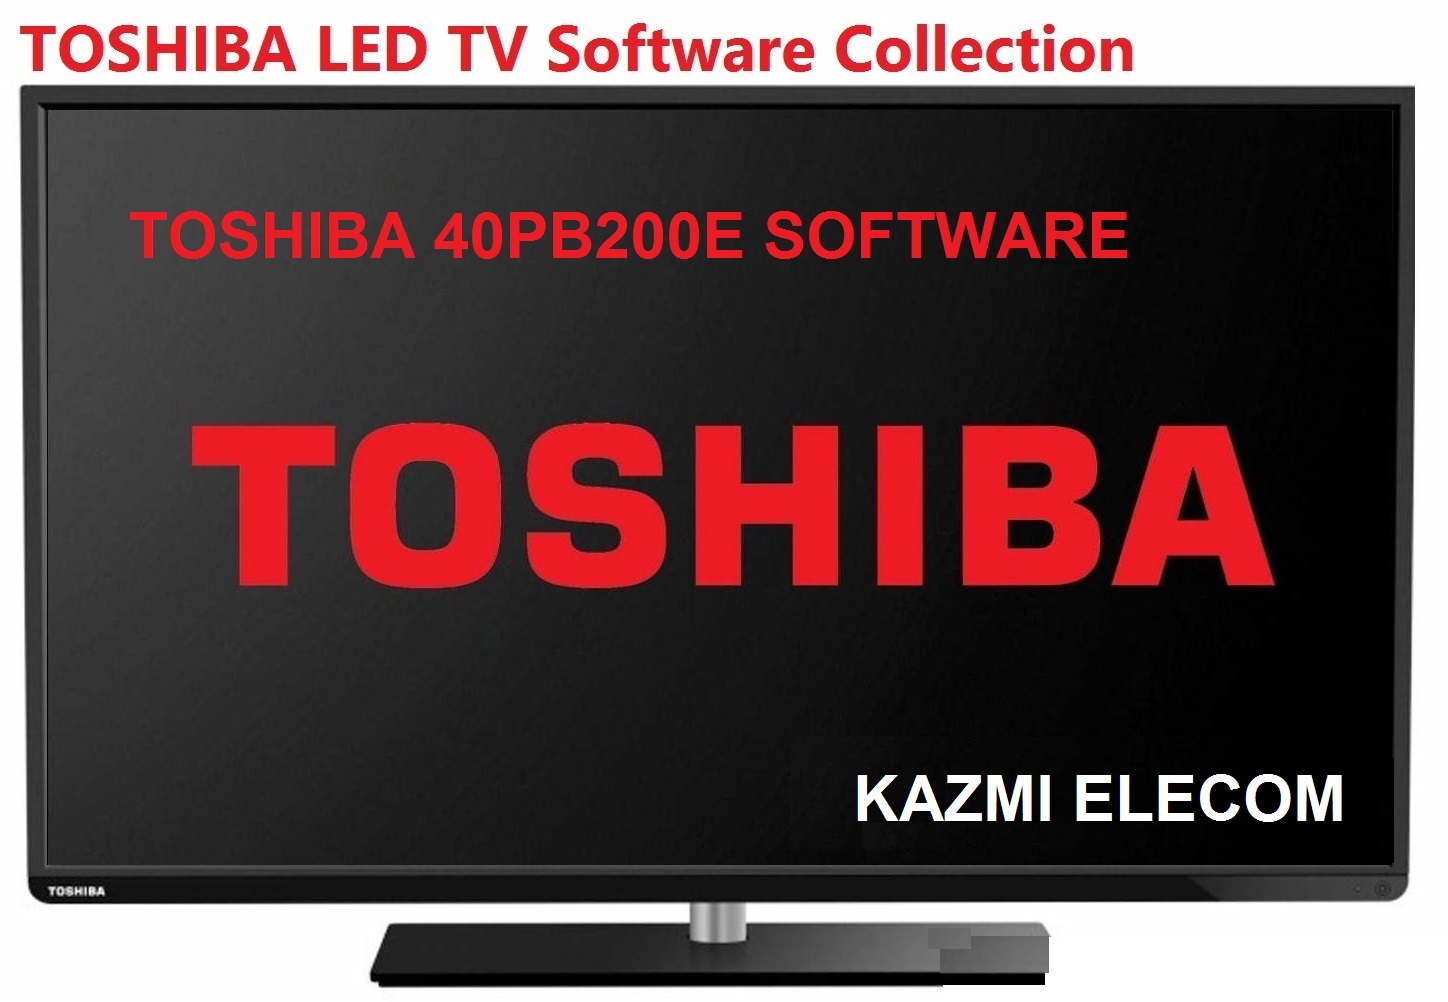 Toshiba 40Pb200E